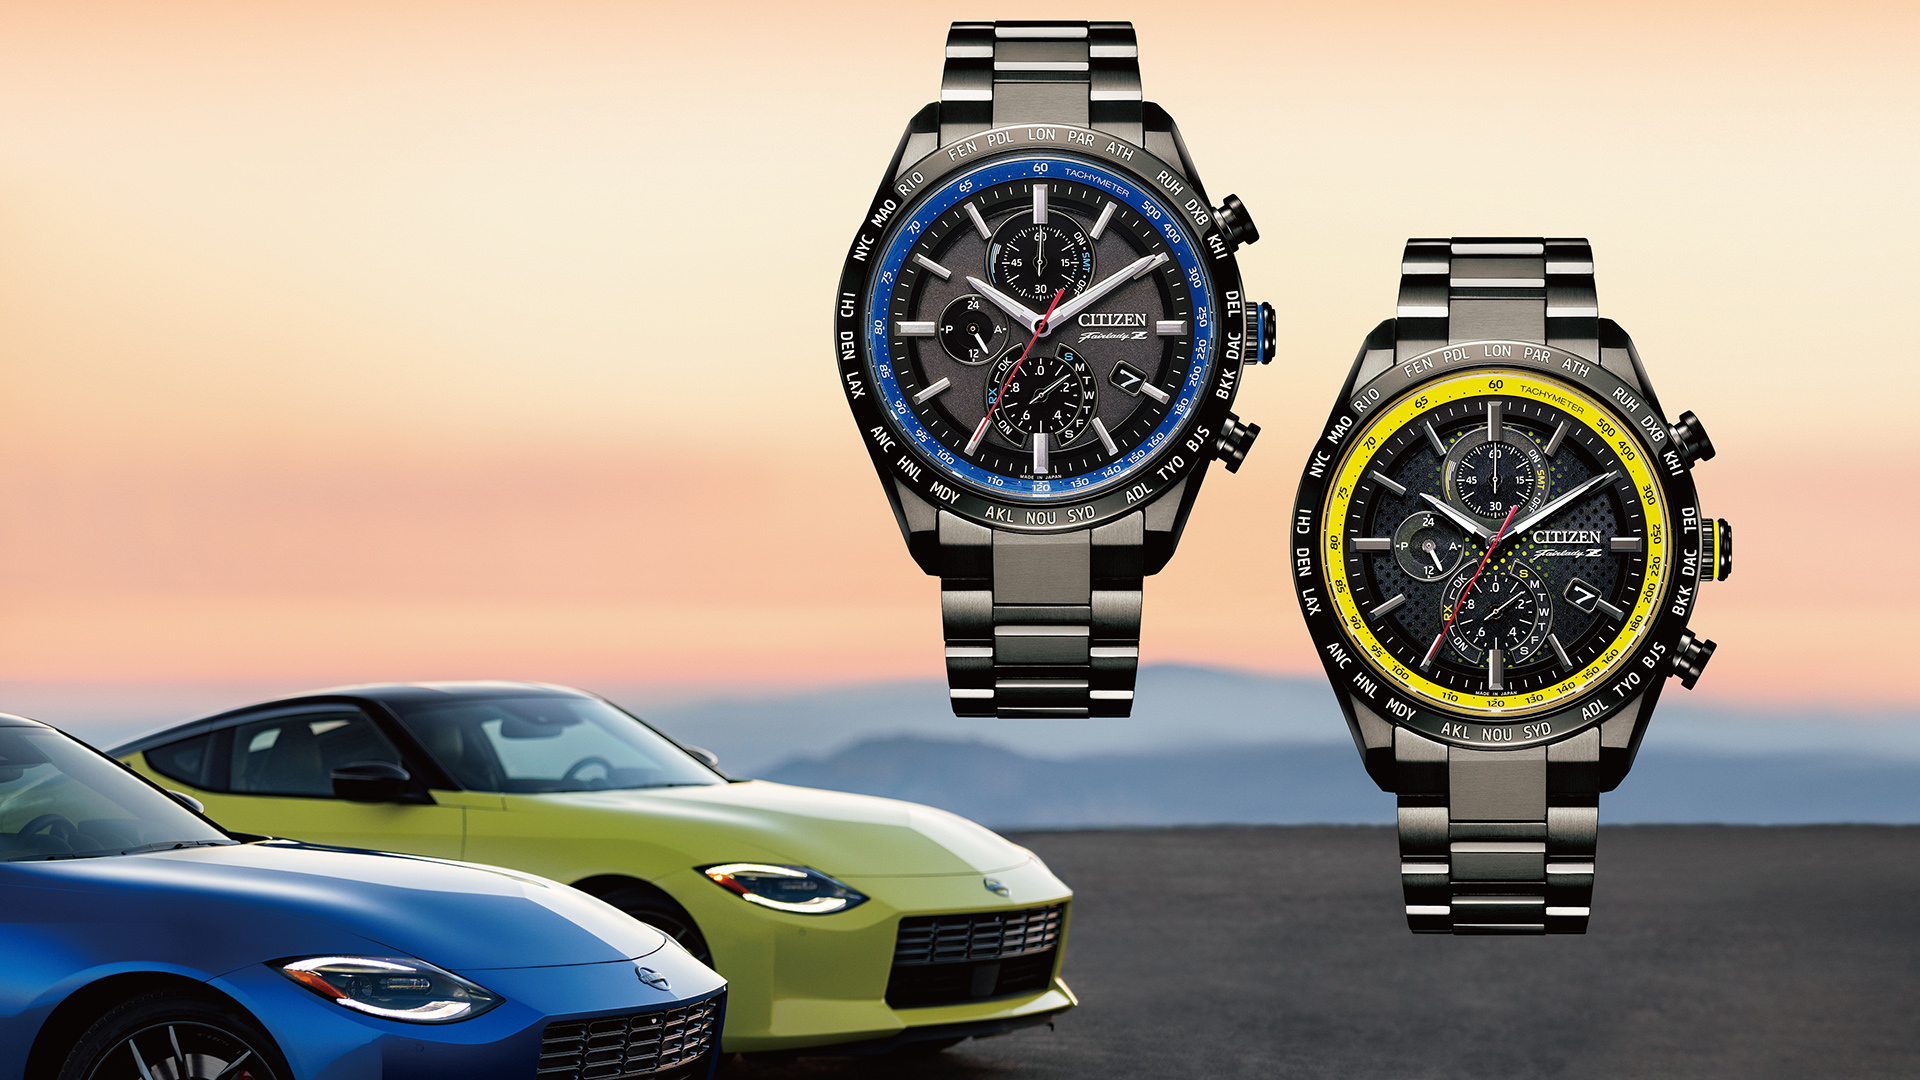 Citizen ra mắt hai chiếc đồng hồ Eco-Drive phiên bản giới hạn lấy cảm hứng từ Nissan Z